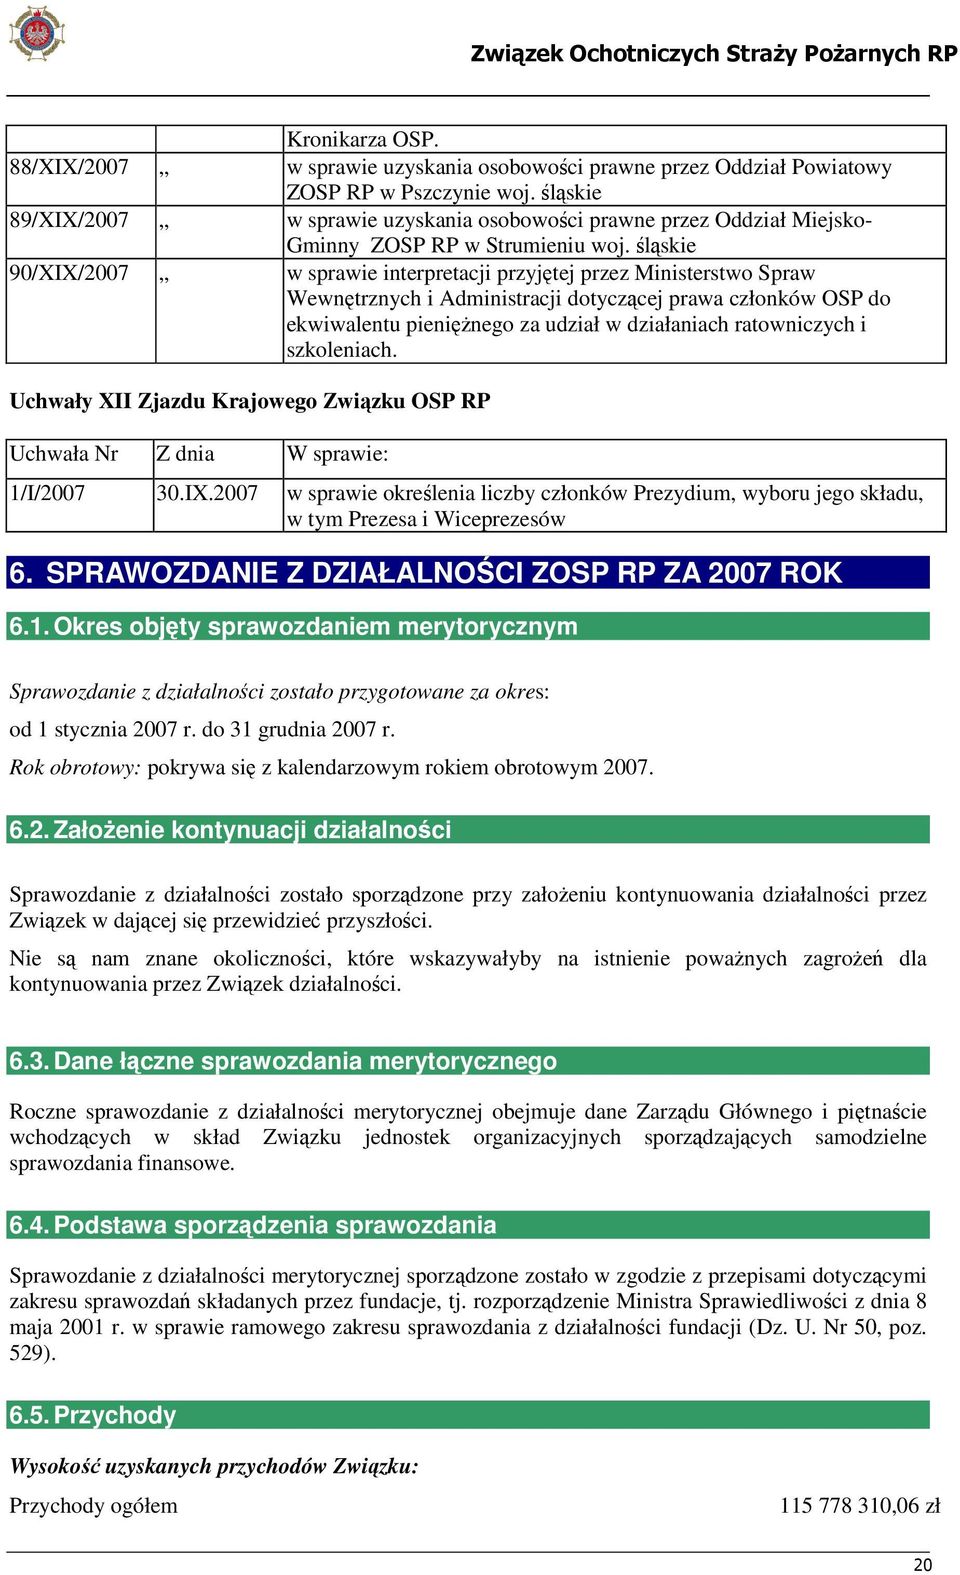 śląskie 90/XIX/2007 w sprawie interpretacji przyjętej przez Ministerstwo Spraw Wewnętrznych i Administracji dotyczącej prawa członków OSP do ekwiwalentu pieniężnego za udział w działaniach